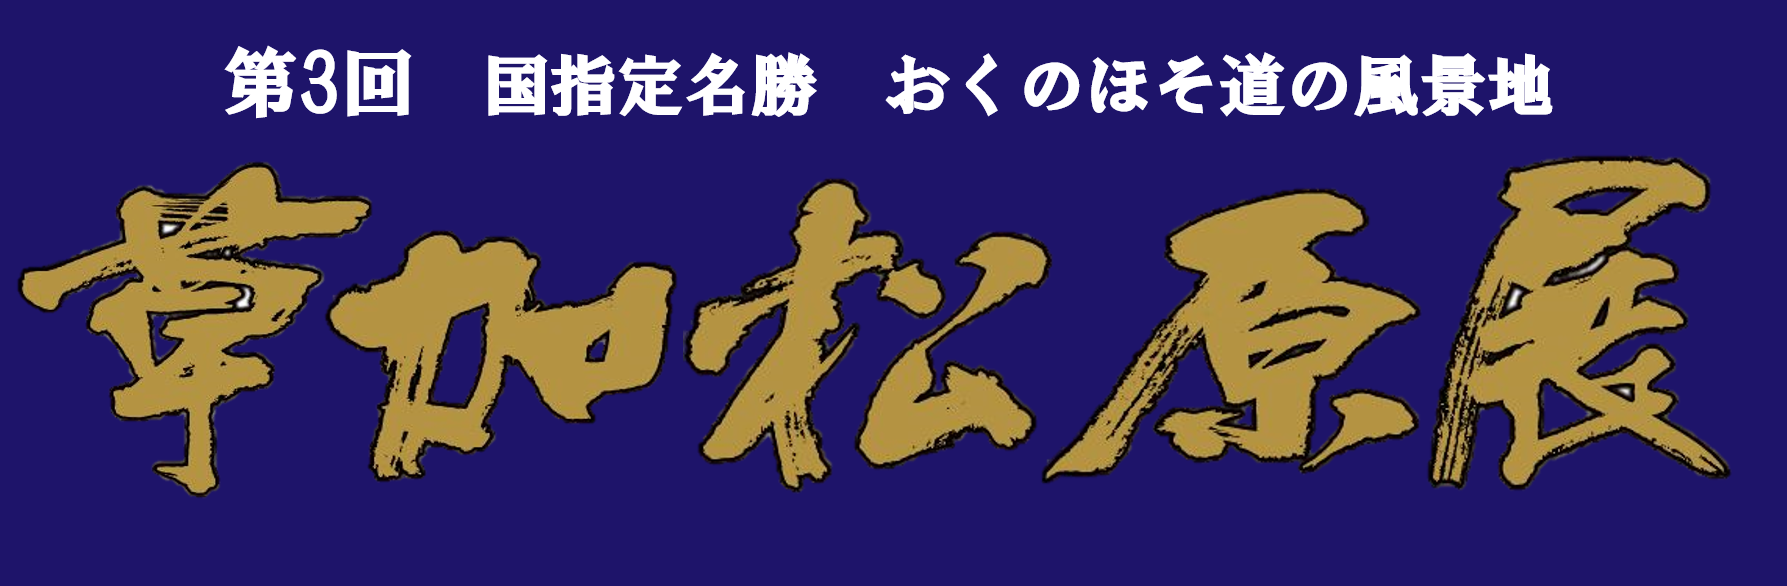 松原展ロゴ1